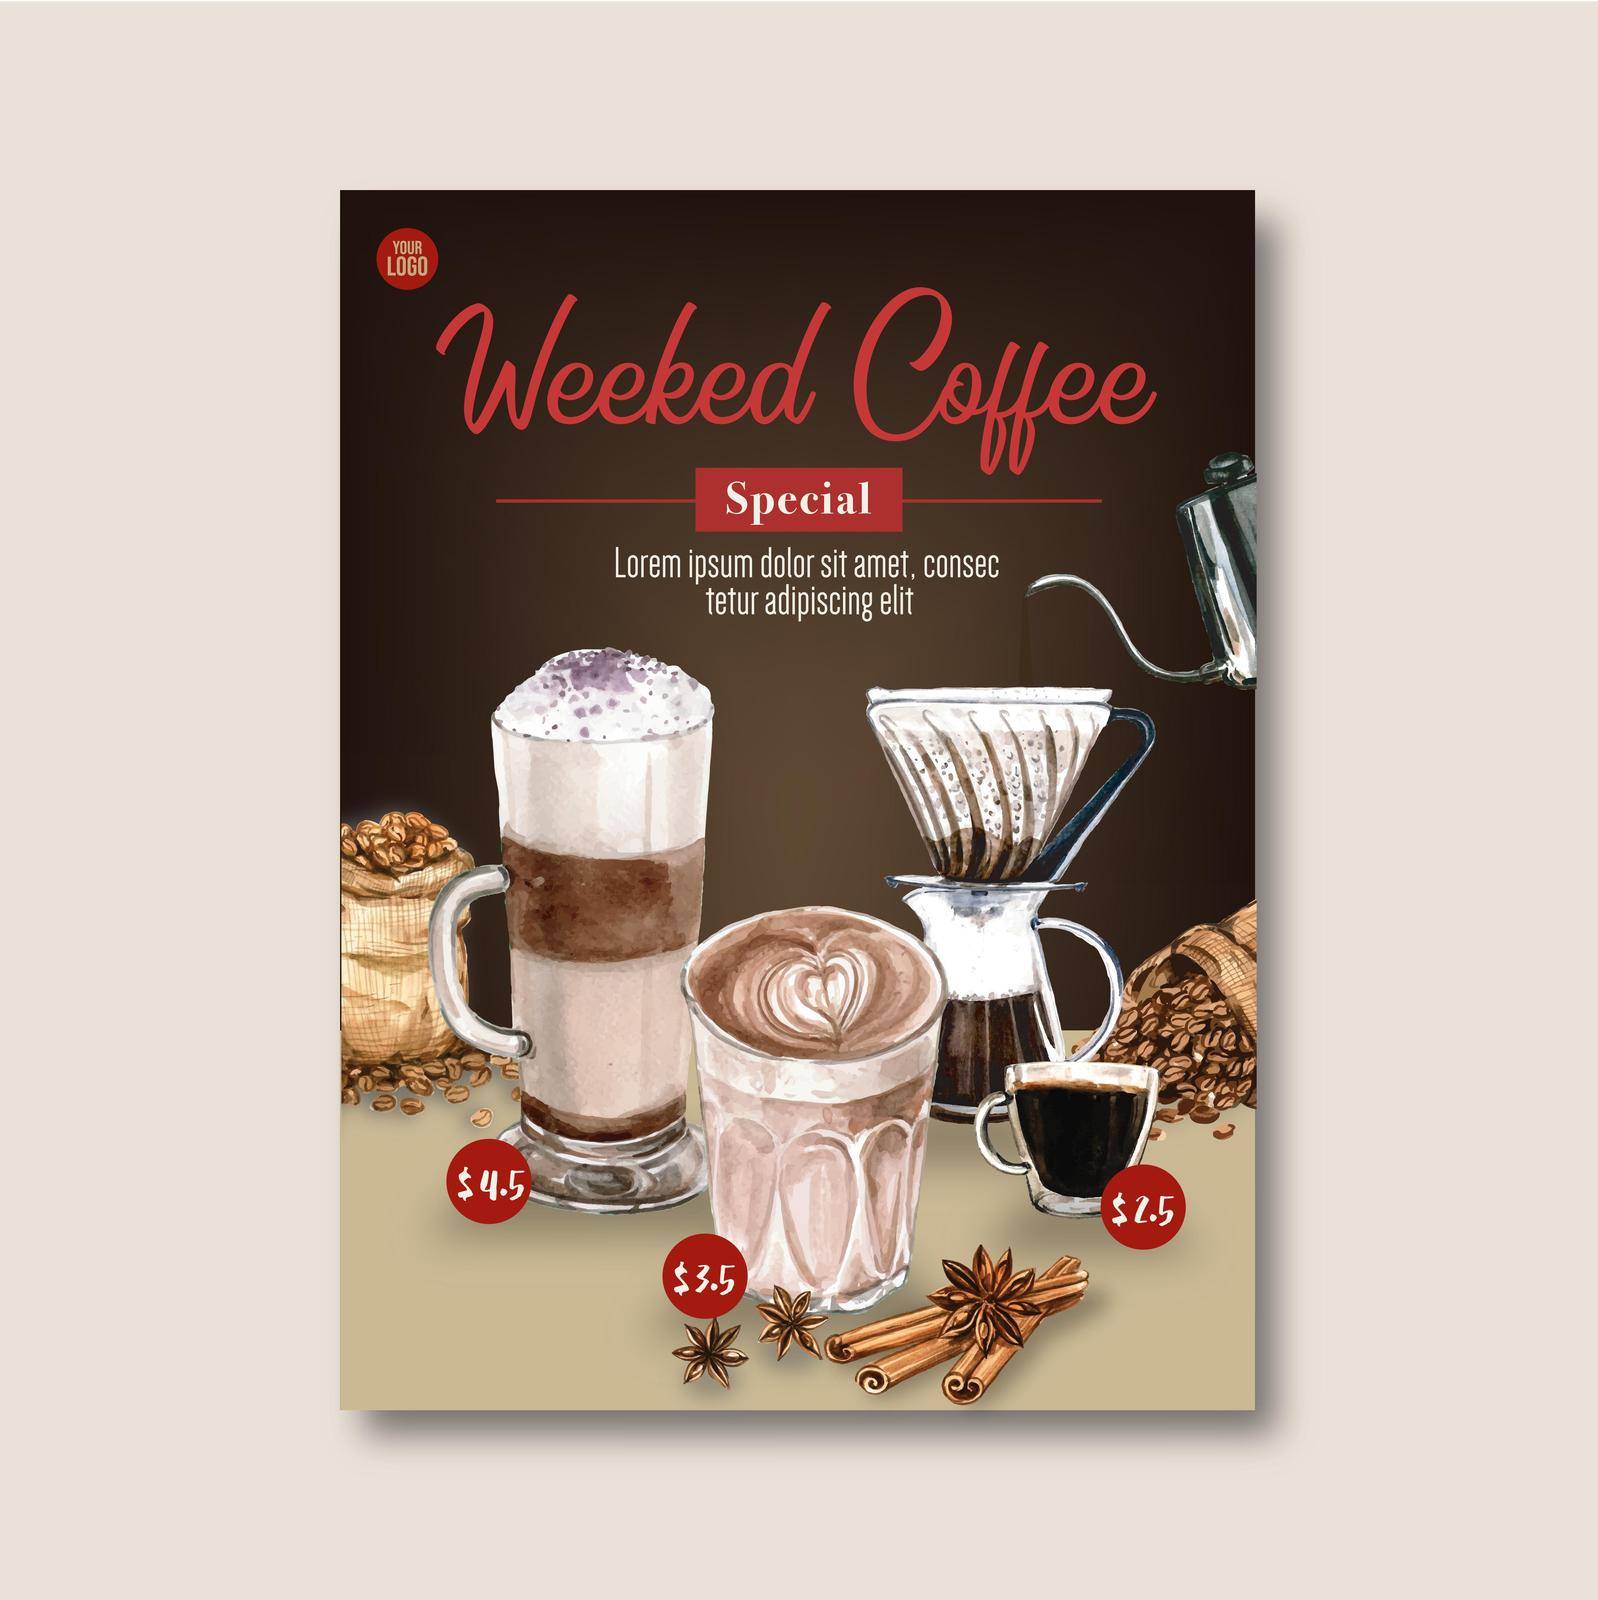 americano ,cappuccino, espresso coffee poster discount, template design, watercolor illustration by Photographeeasia